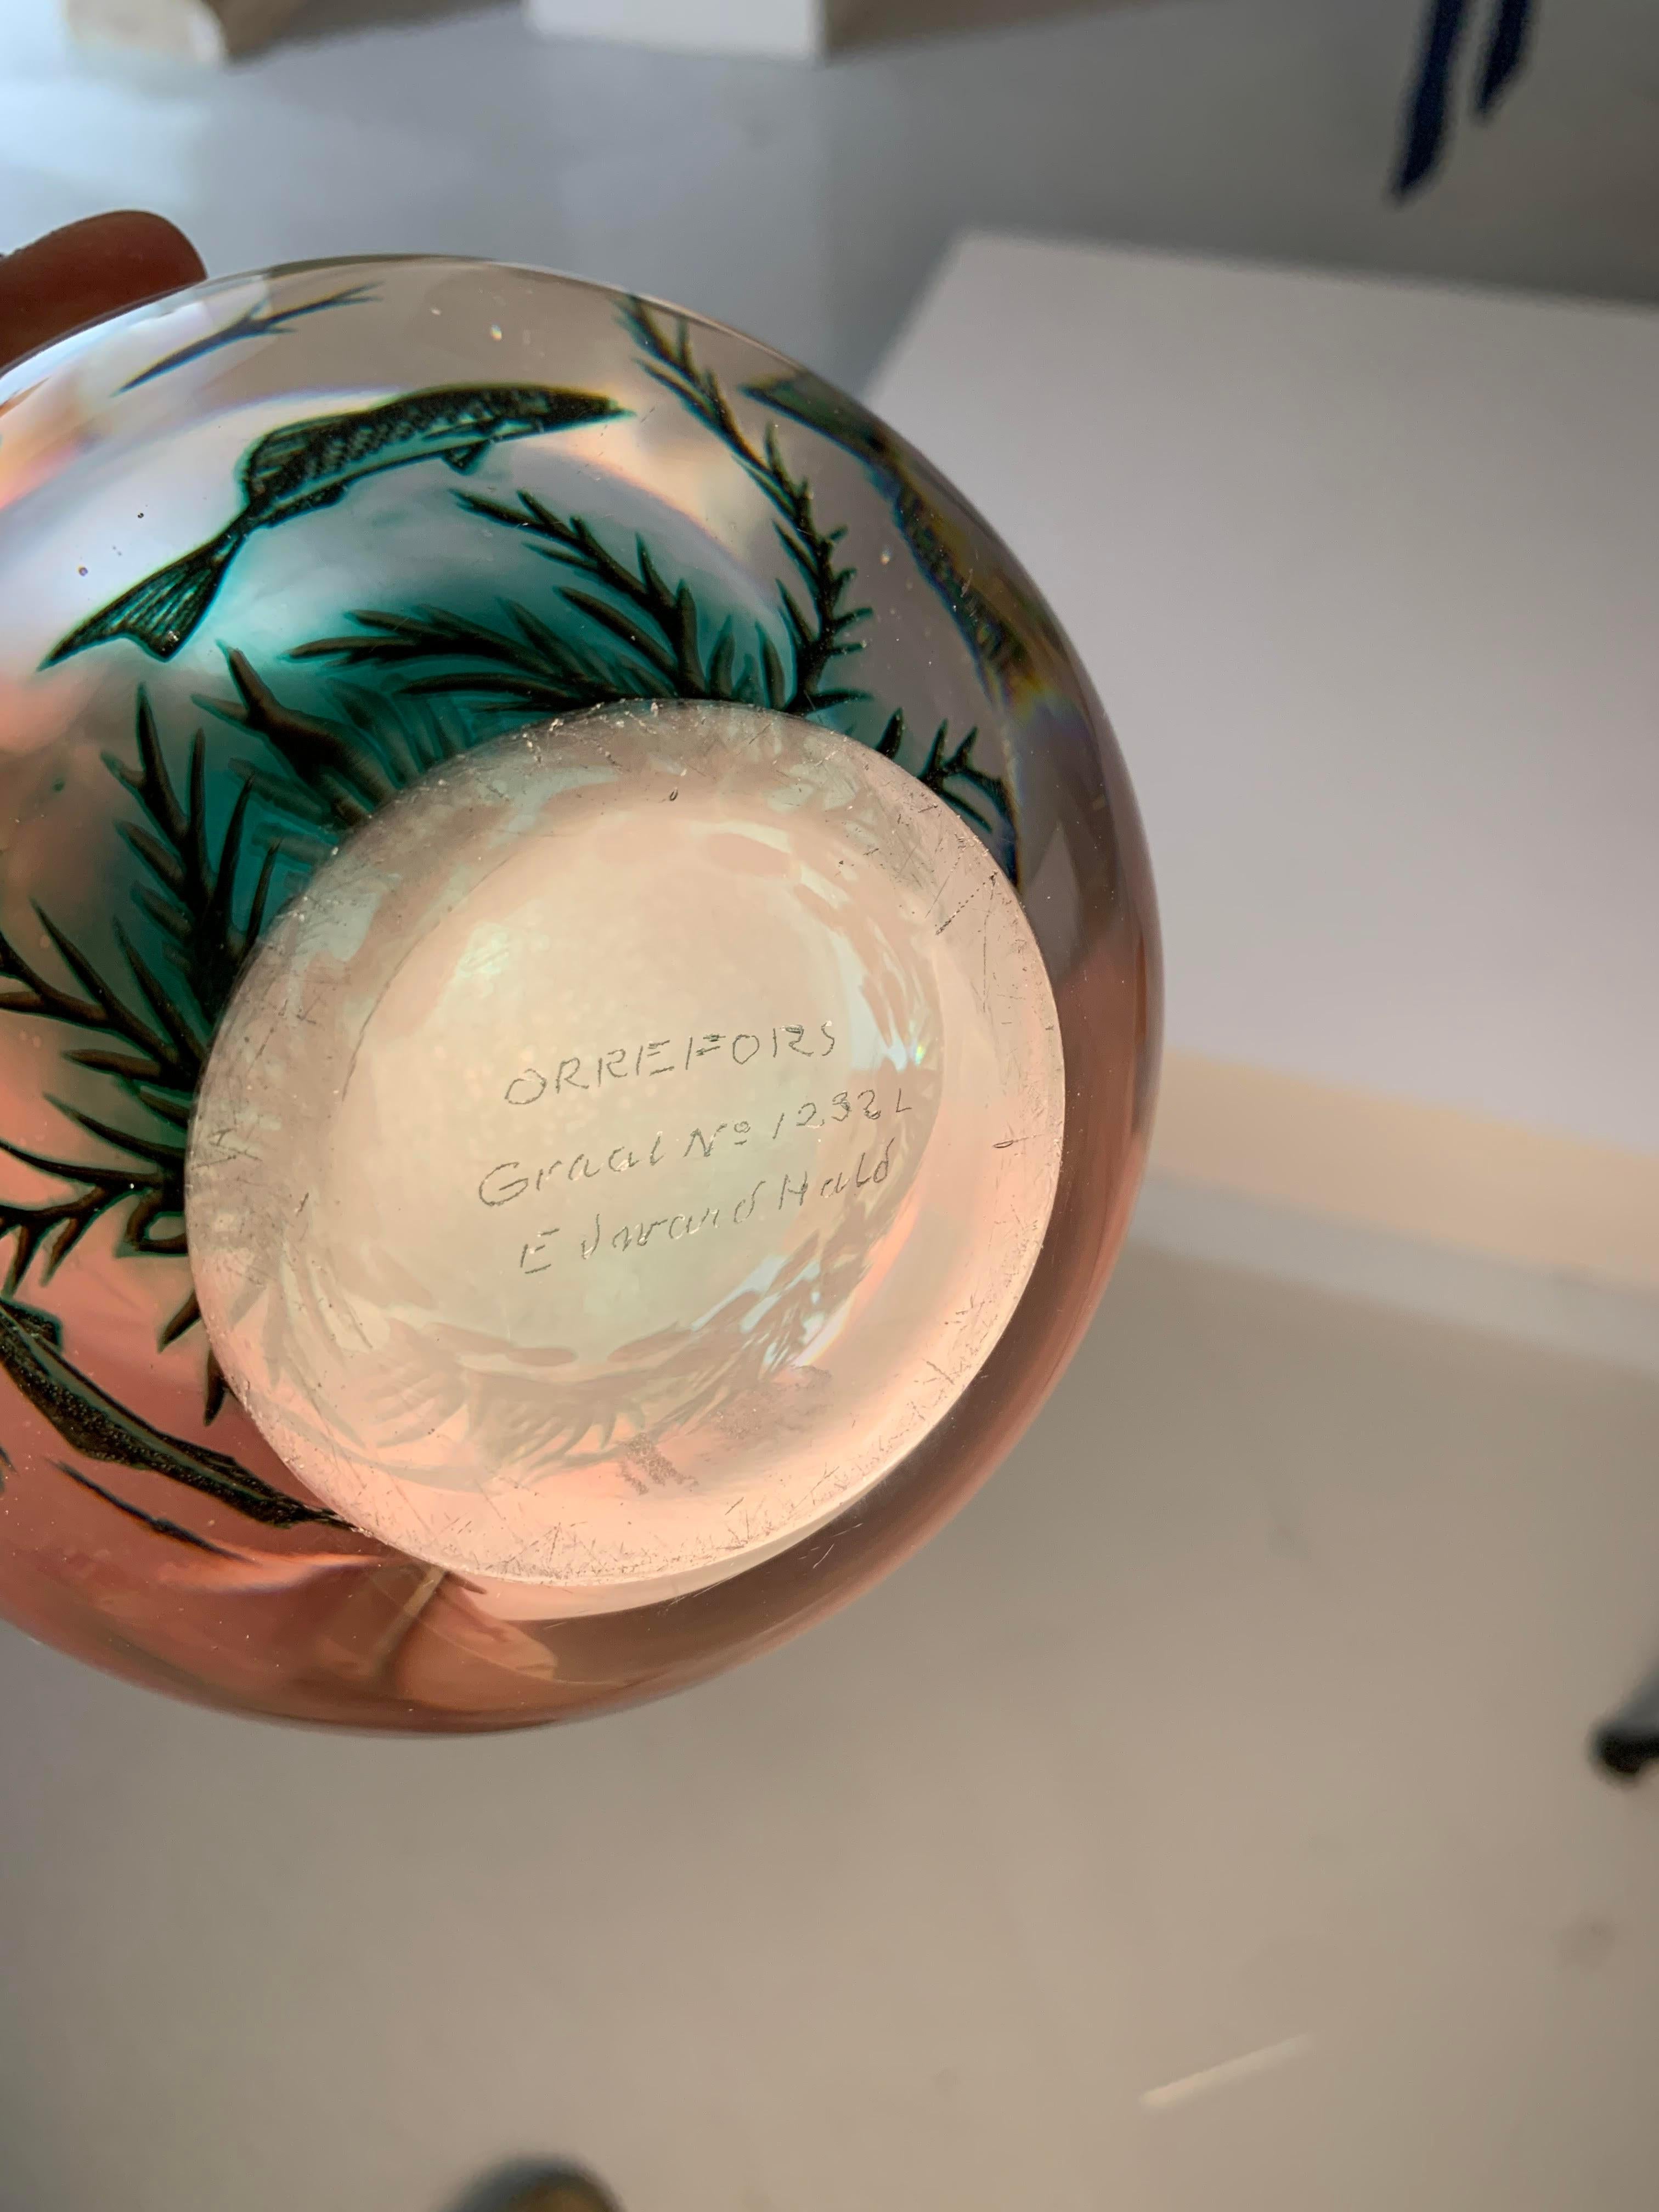 ie schwedische Fiskgraal-Aquamarin-Vase von Edward Hald für Orrefors aus den 1950er Jahren ist ein wahrhaft einzigartiges Stück Kunst und Handwerkskunst. Seine Besonderheit liegt in der Ausgewogenheit zwischen seinem exquisiten Design und der